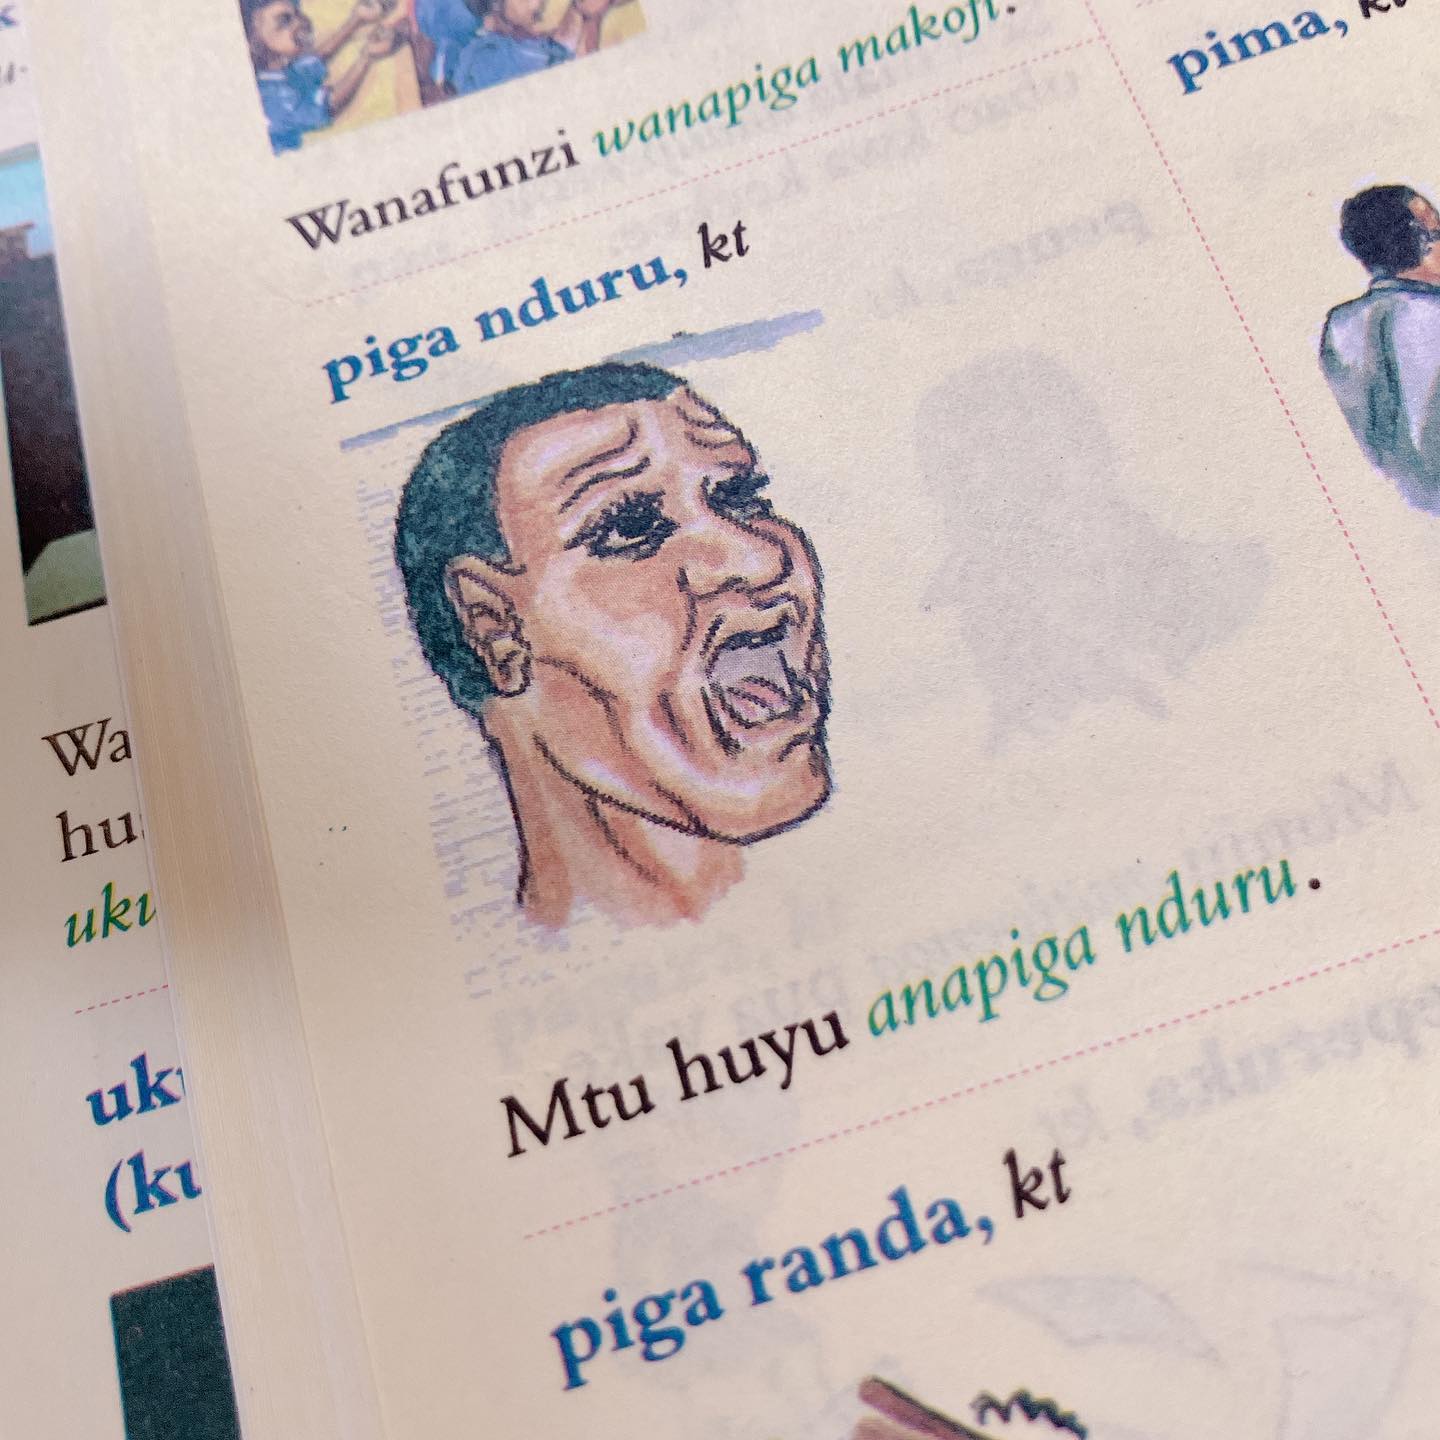 久しぶりにスワヒリ語の教科書広げてみたら、、、page-visual 久しぶりにスワヒリ語の教科書広げてみたら、、、ビジュアル